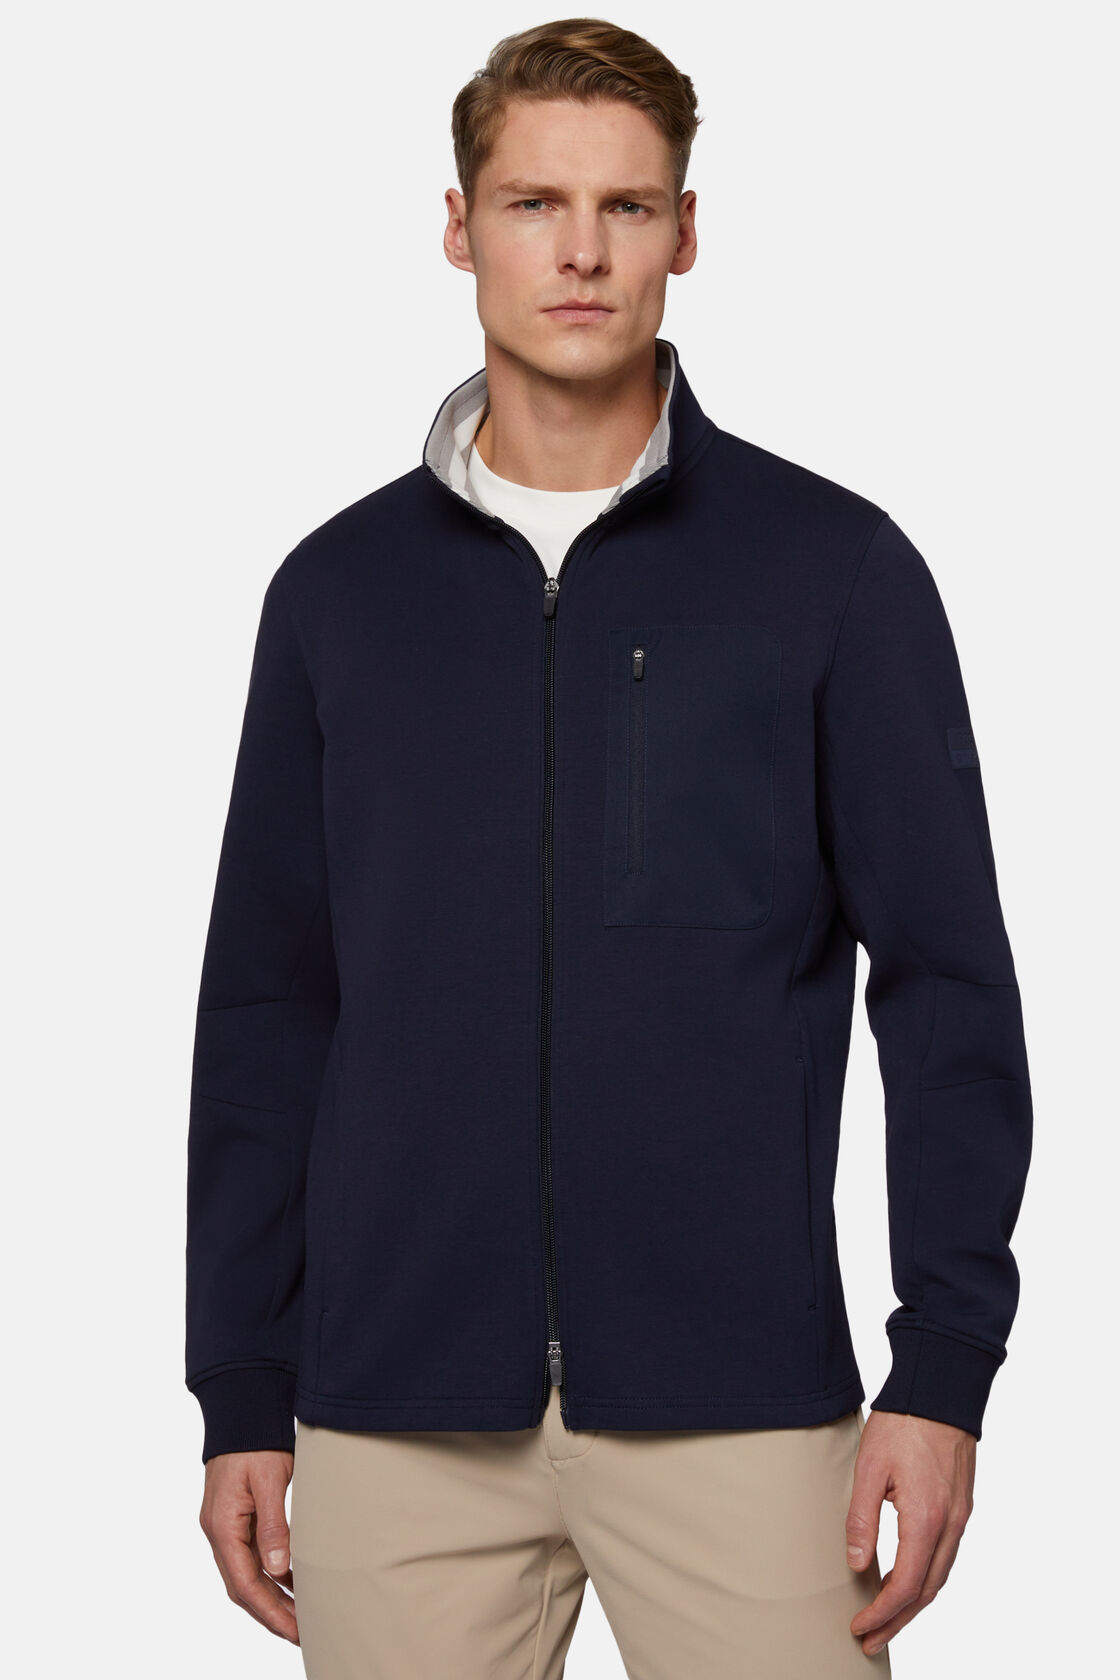 Sweatshirt mit durchgehendem Reißverschluss aus leichtem Scuba, Navy blau, hi-res